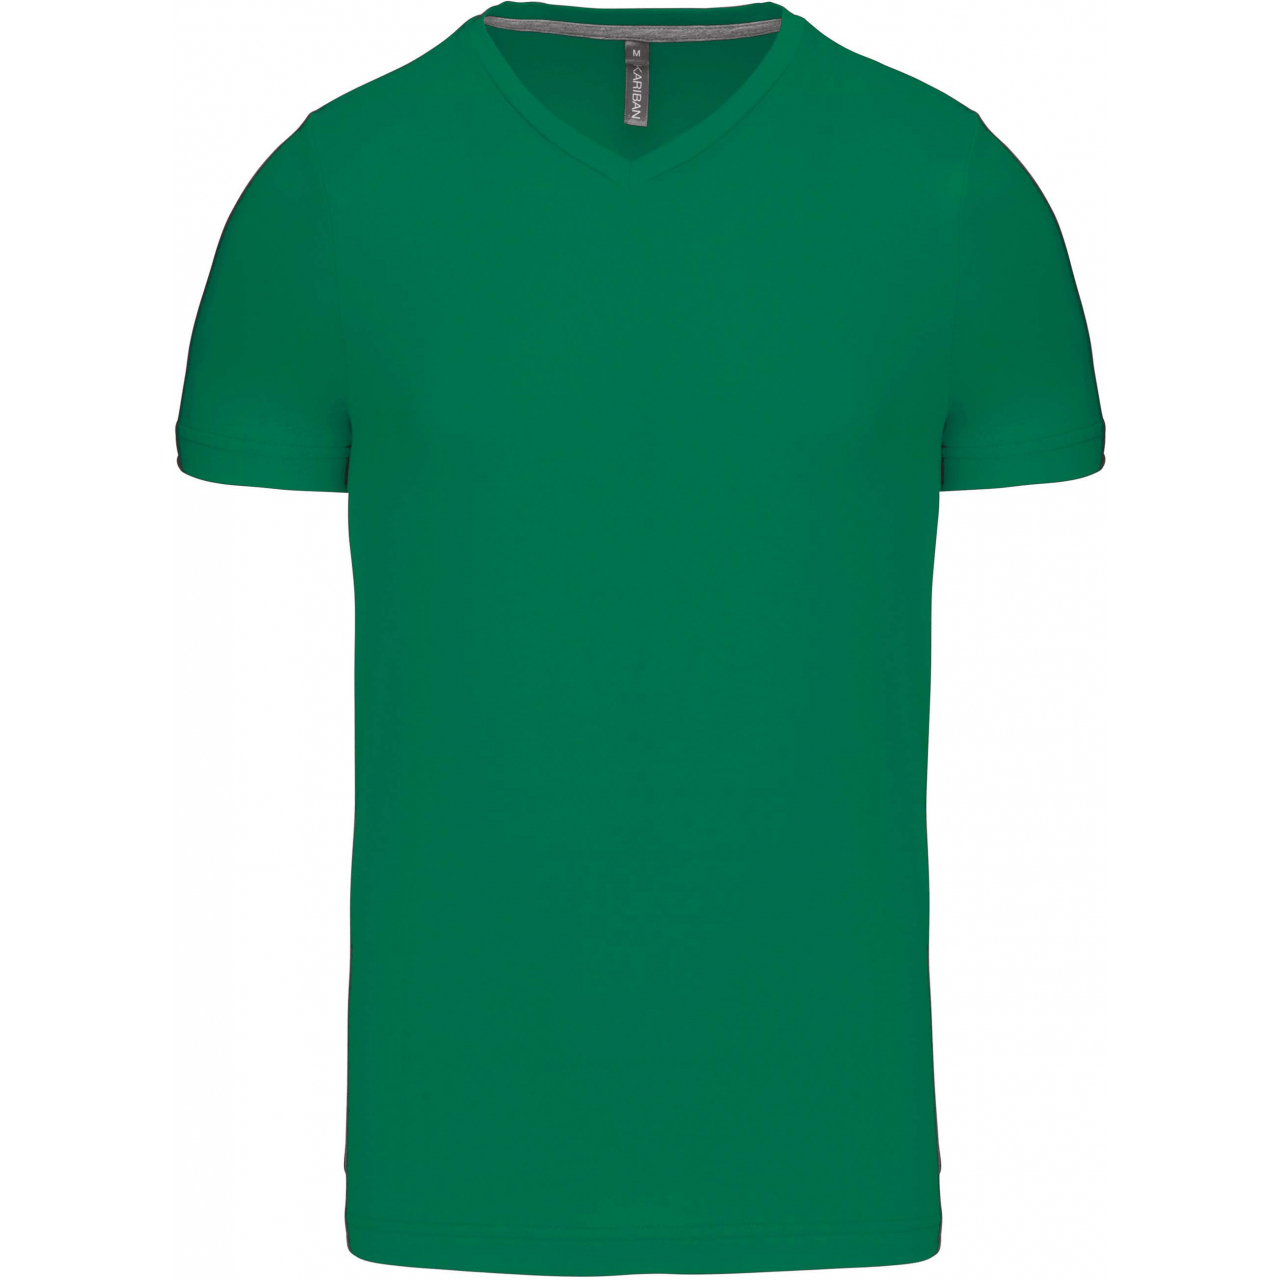 Pánské tričko Kariban krátký rukáv V-neck - zelené, XL